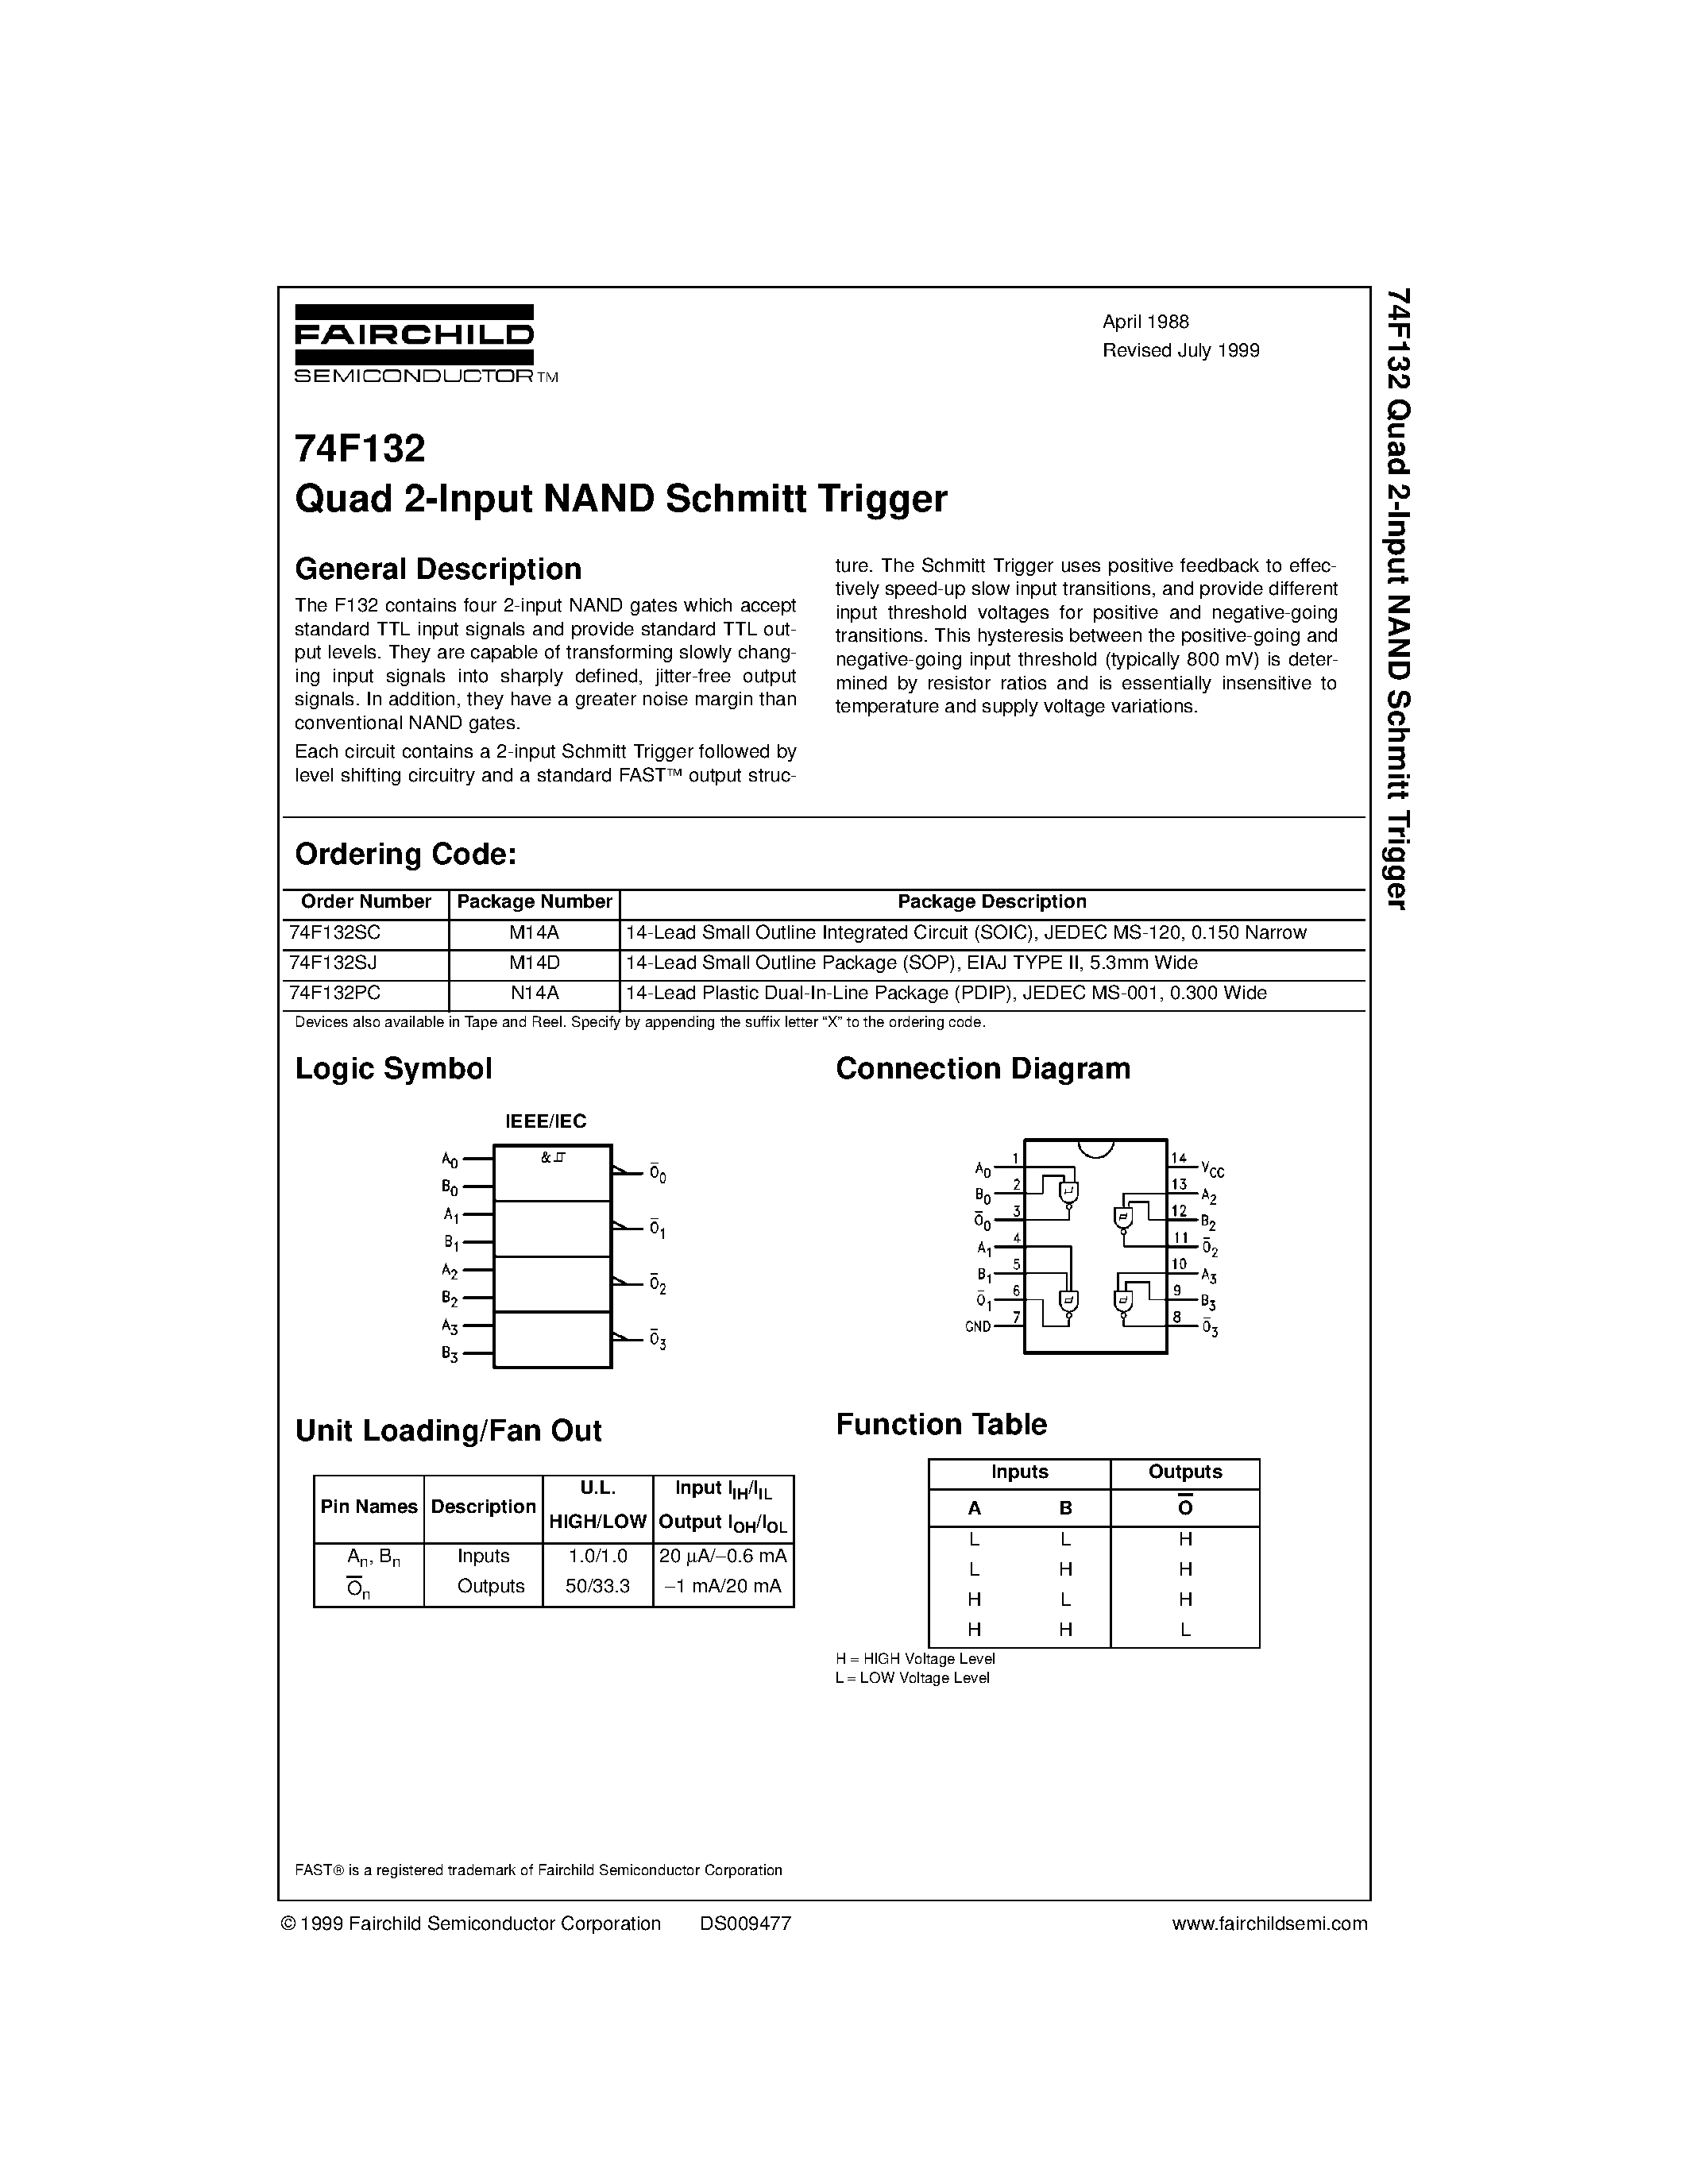 Даташит 74F132 - Quad 2-Input NAND Schmitt Trigger страница 1